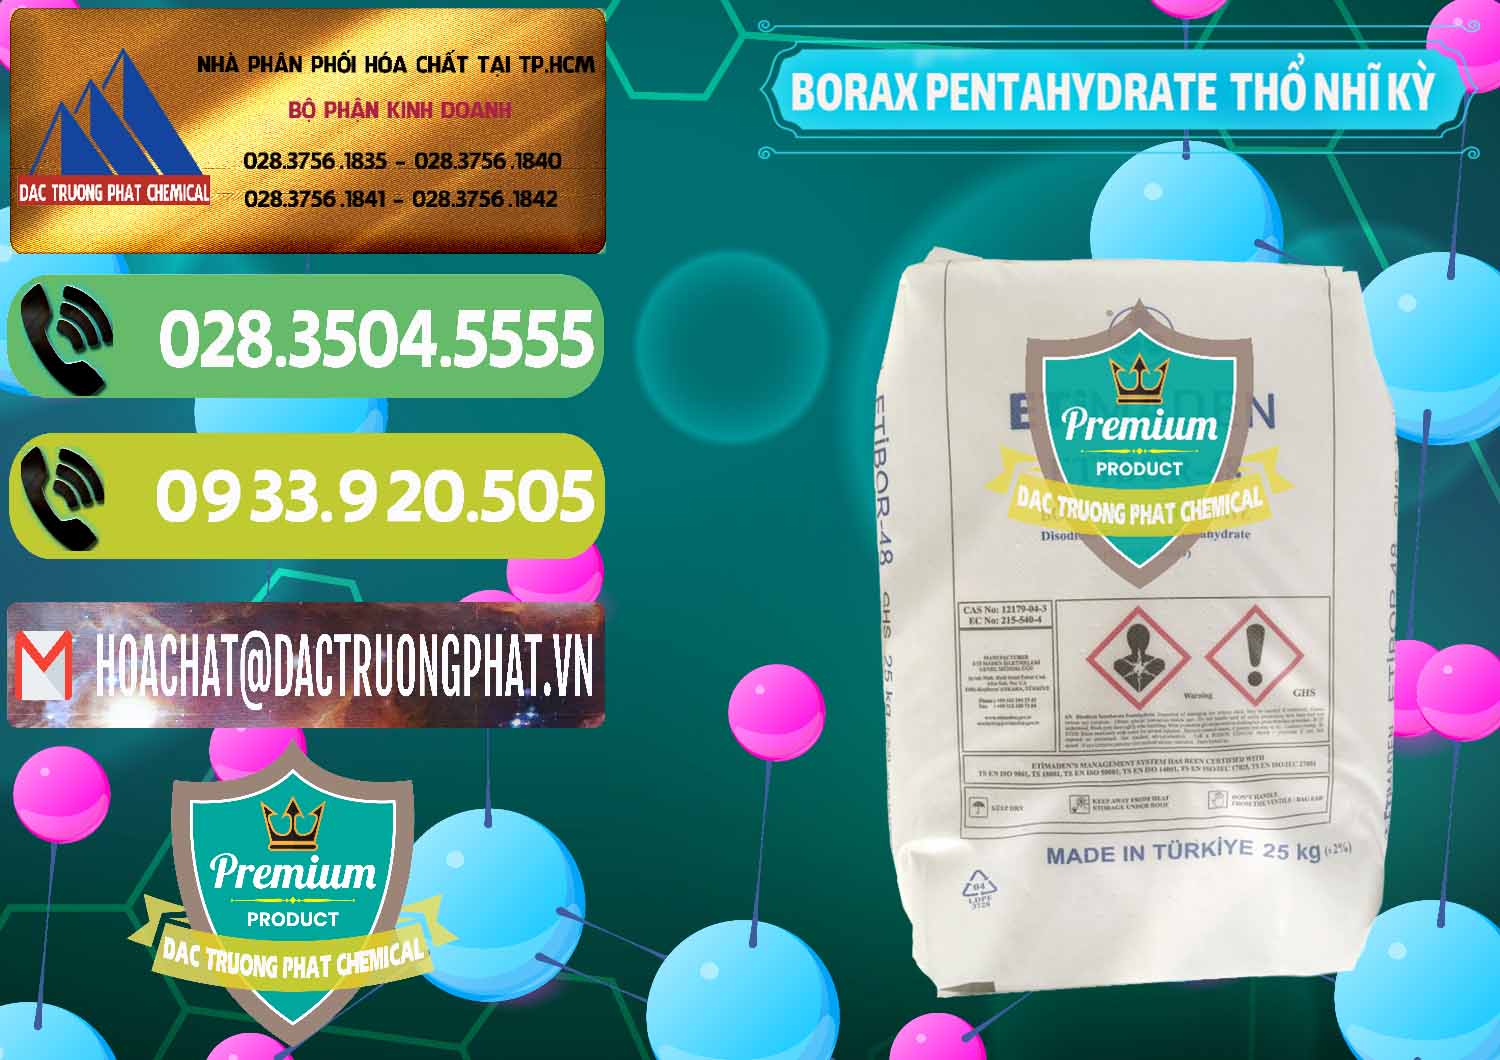 Đơn vị chuyên bán - cung ứng Borax Pentahydrate Thổ Nhĩ Kỳ Turkey - 0431 - Cung cấp & phân phối hóa chất tại TP.HCM - hoachatmientay.vn